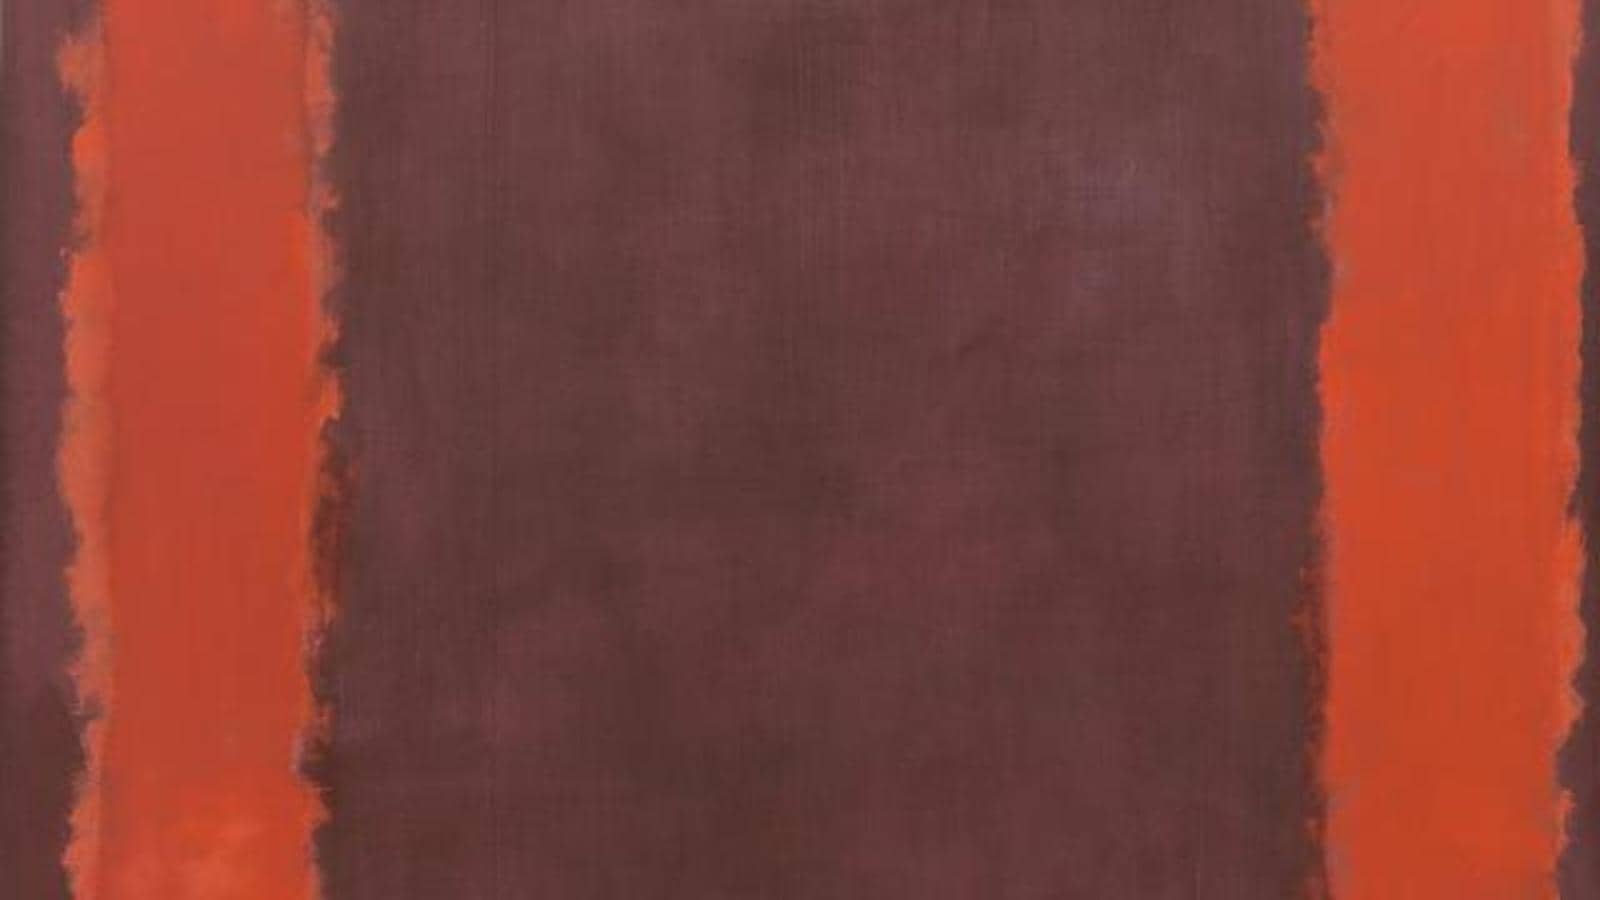 Stampe arancione giallo rosso di Mark Rothko quadri famosi - Mark Rothko